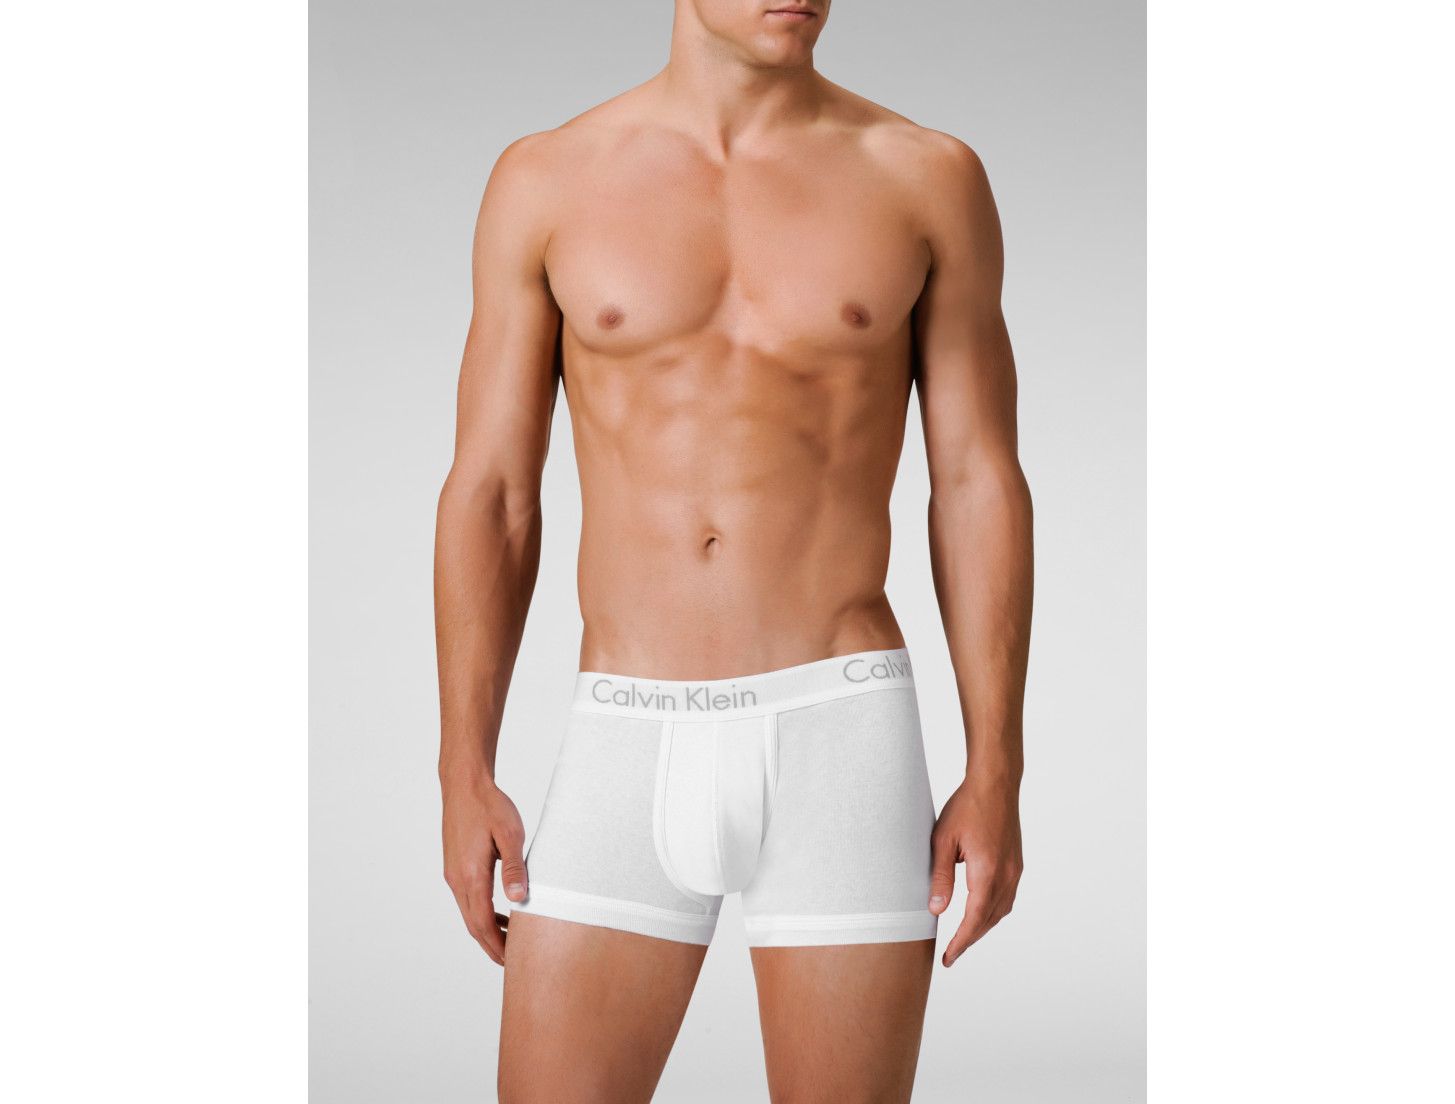  Calvin Klein Body Trunk Mens Underwear